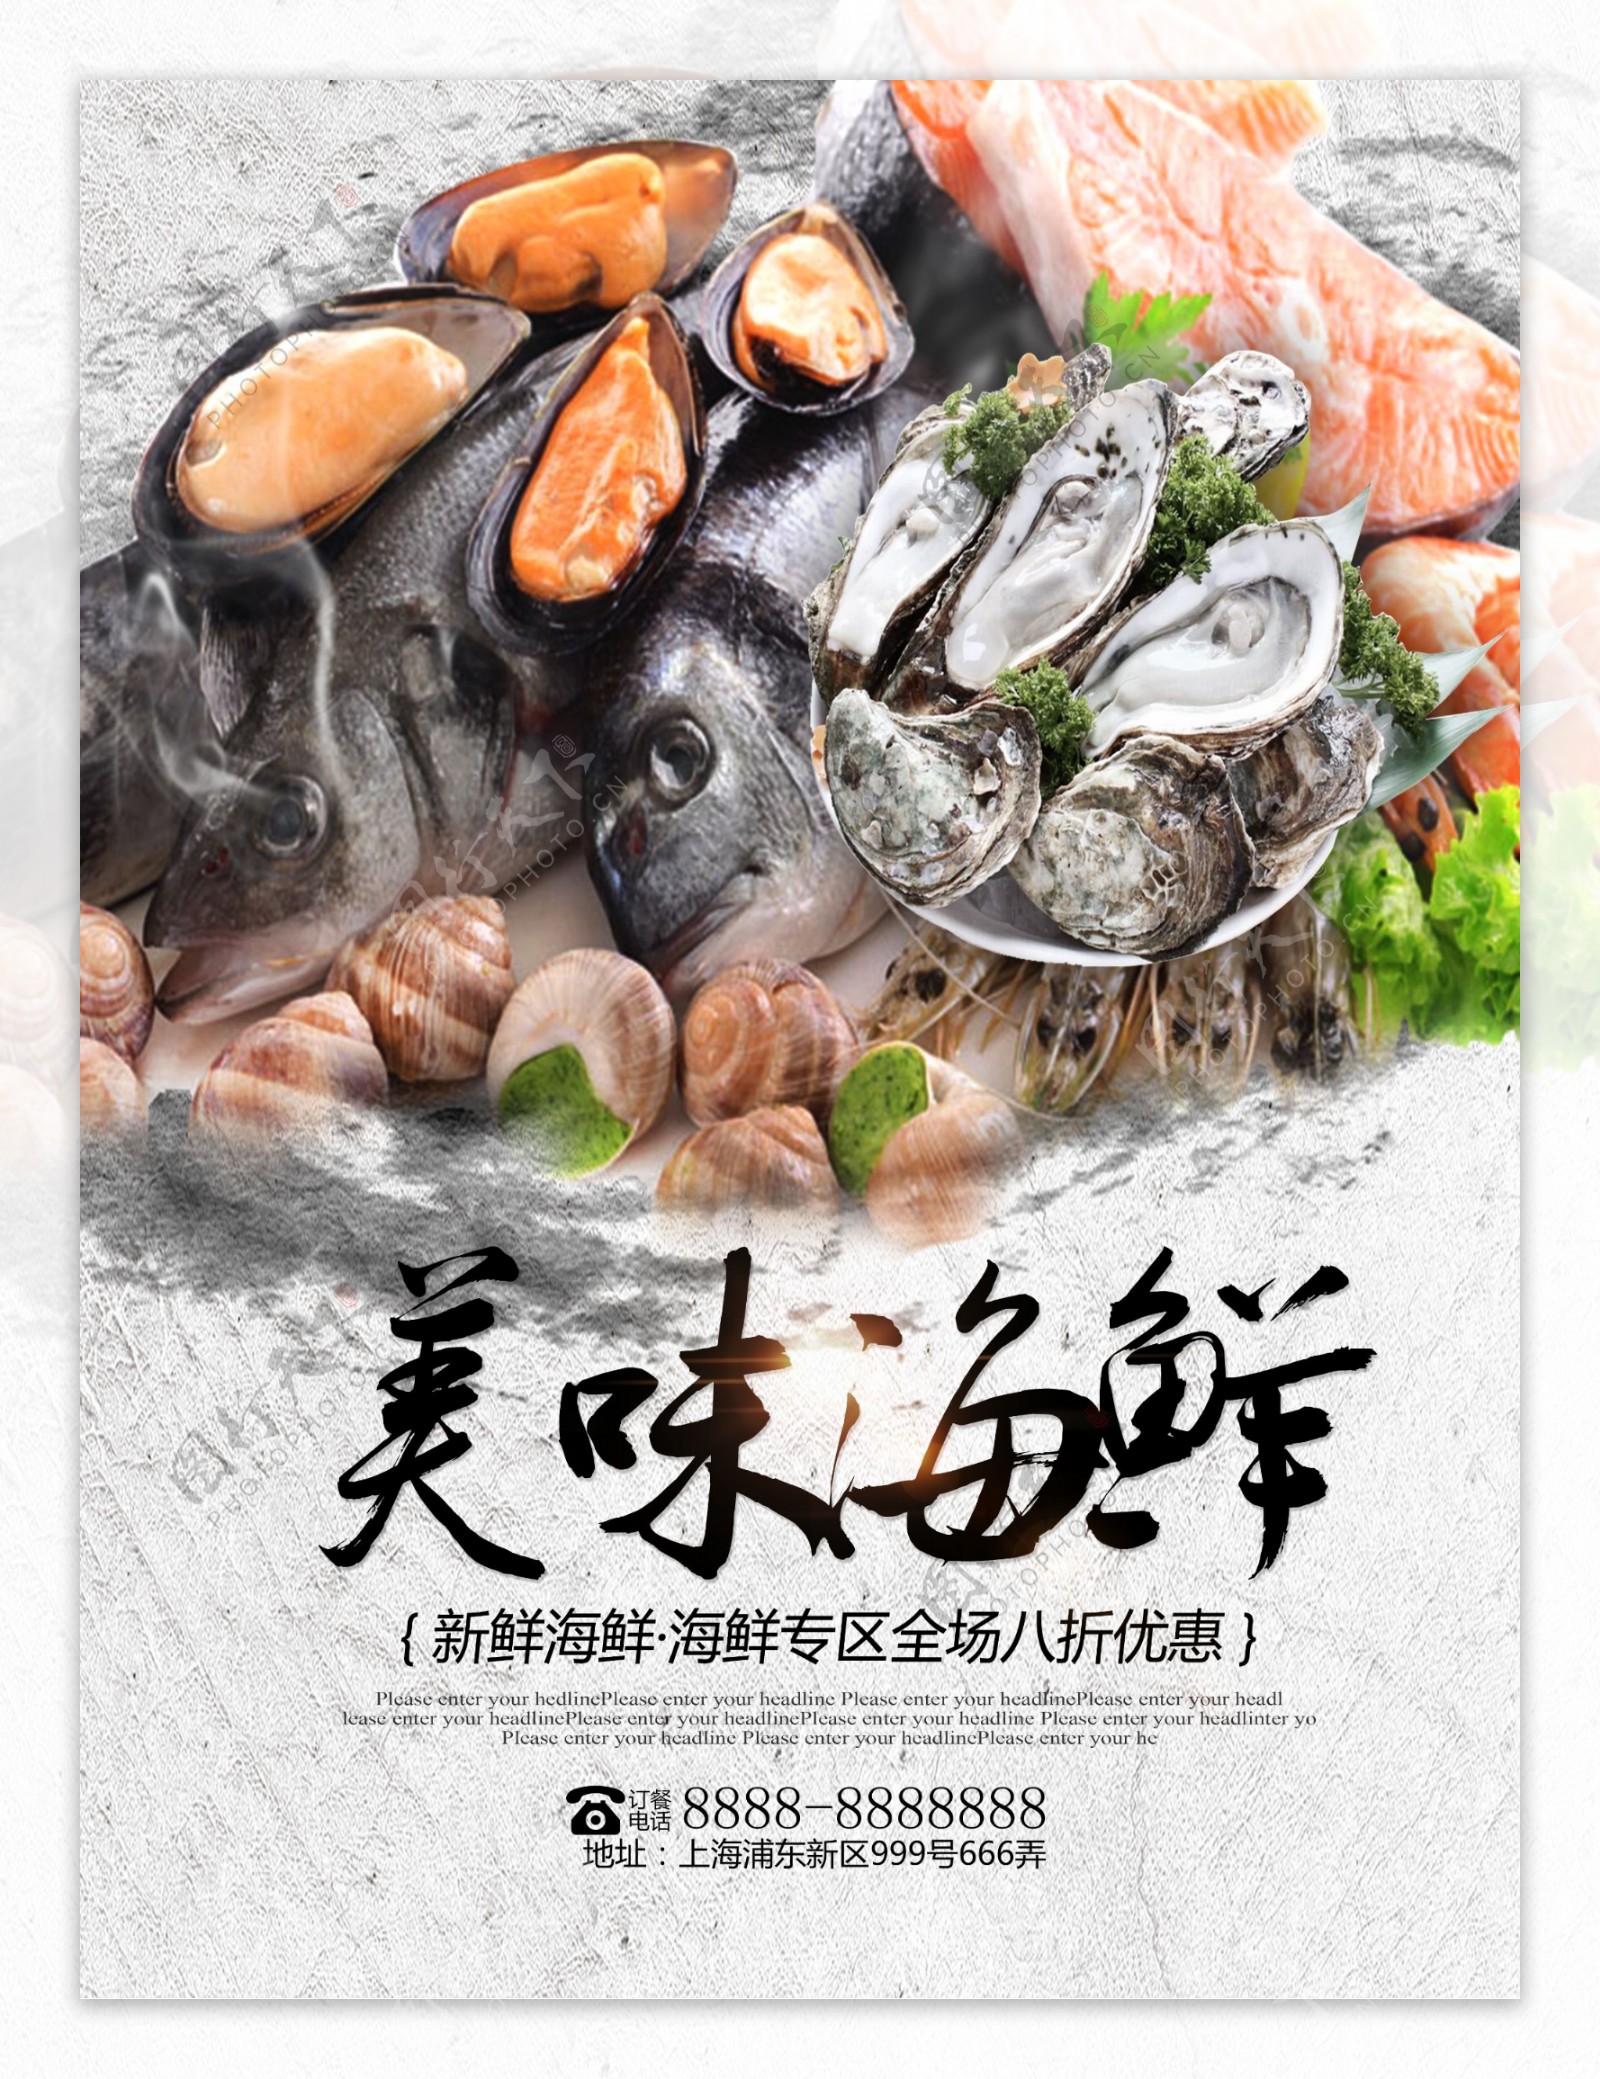 简约新鲜美味海鲜专区美食优惠促销海报